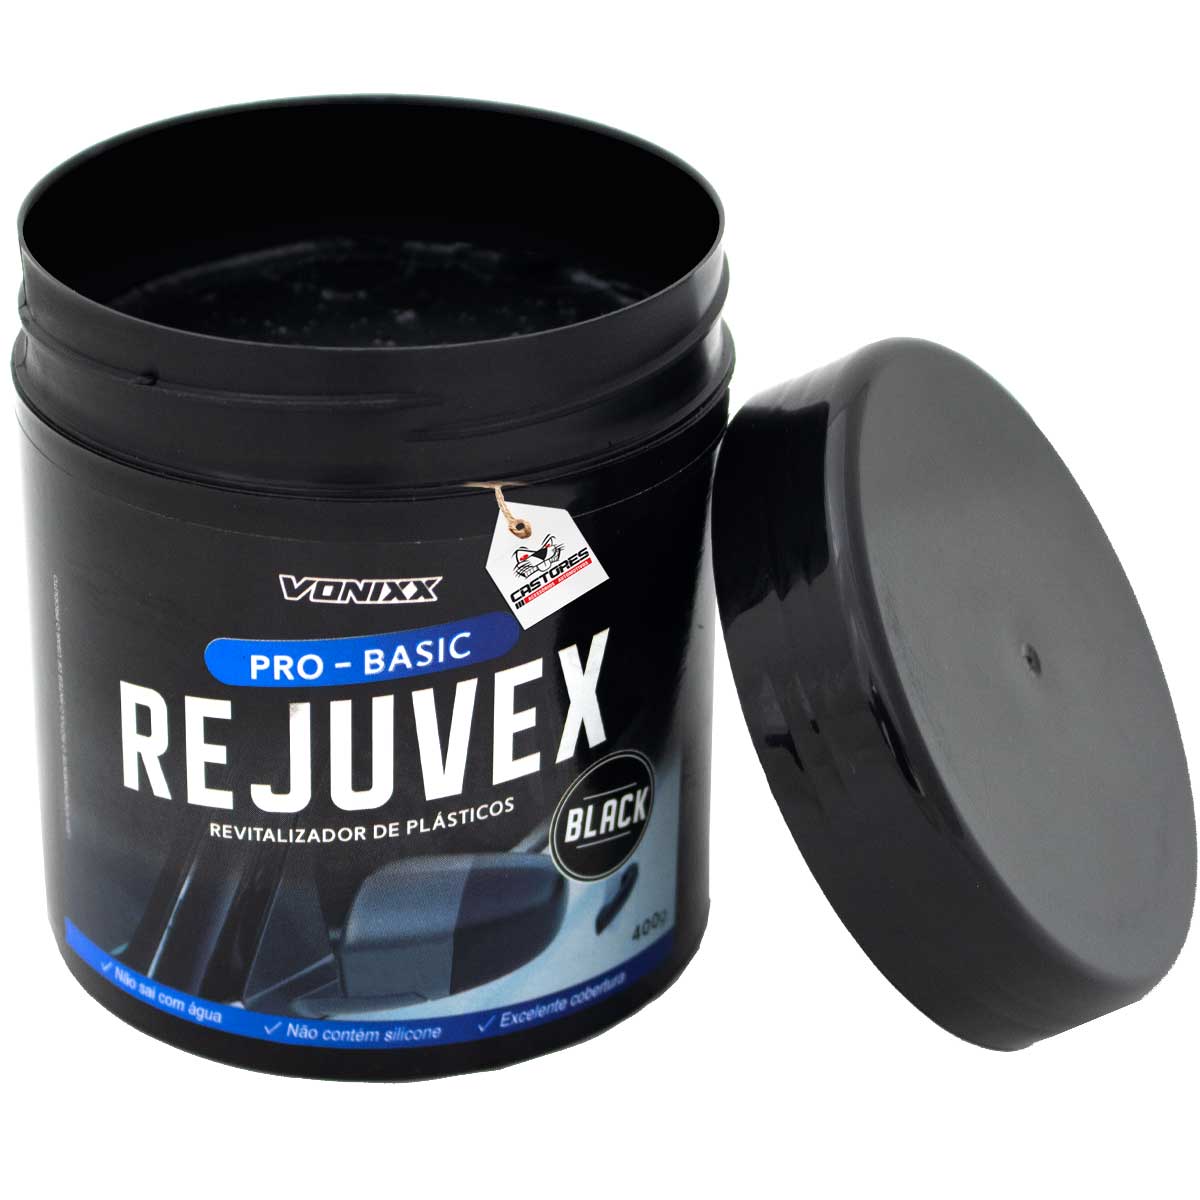 Rejuvex Black Revitalizador De Plasticos Vonixx 400g